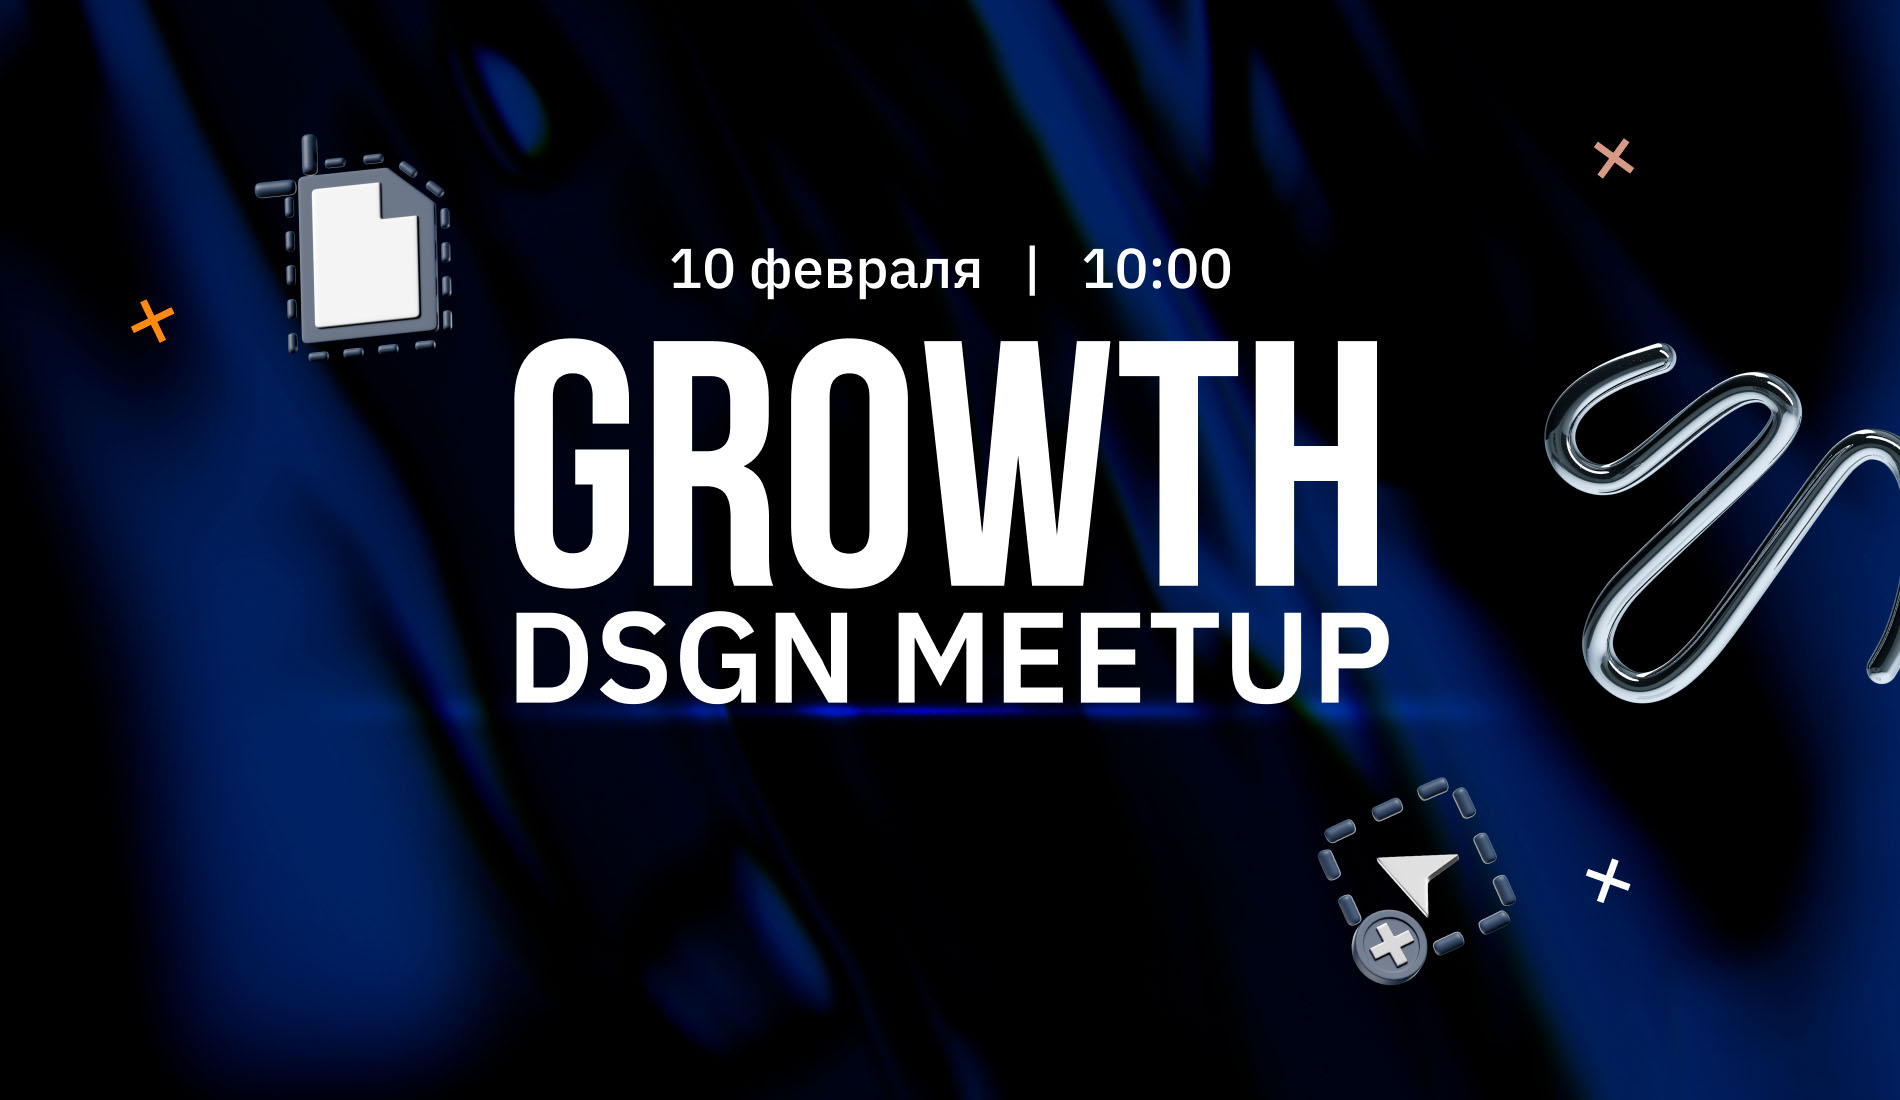 GROWTH DSGN MEETUP: ивент для тех, кто хочет реализоваться в дизайне